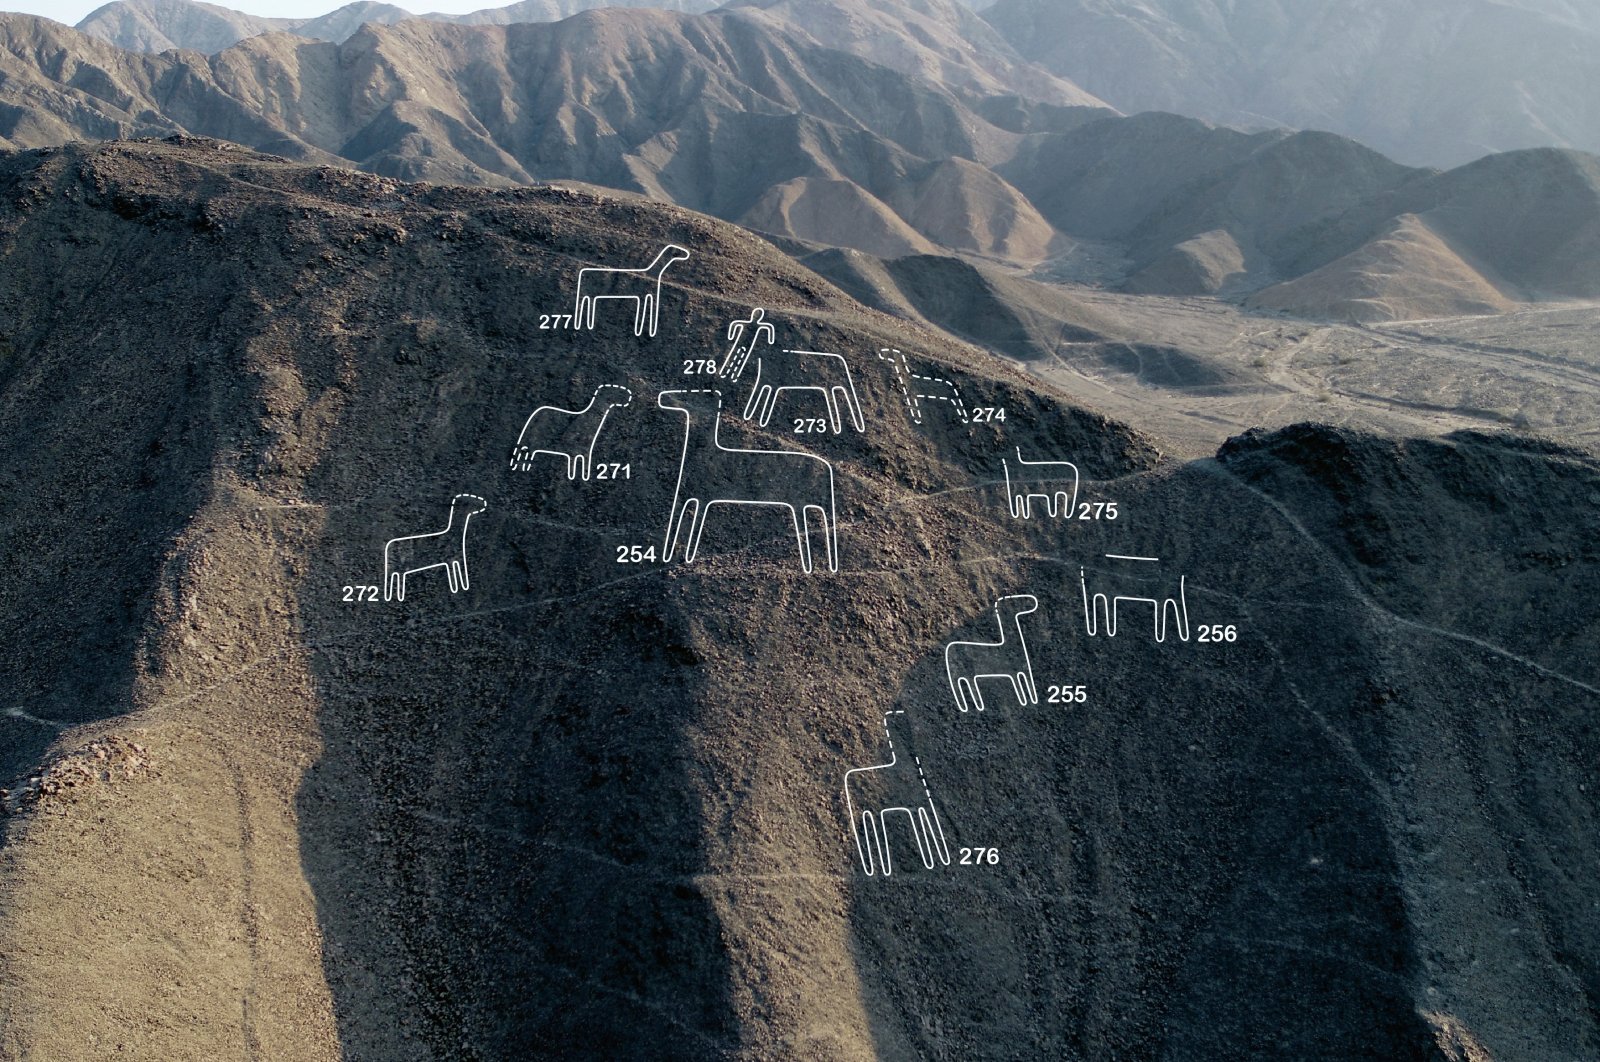 Lebih dari 100 desain kuno baru ditemukan di garis Nazca berusia 2.000 tahun